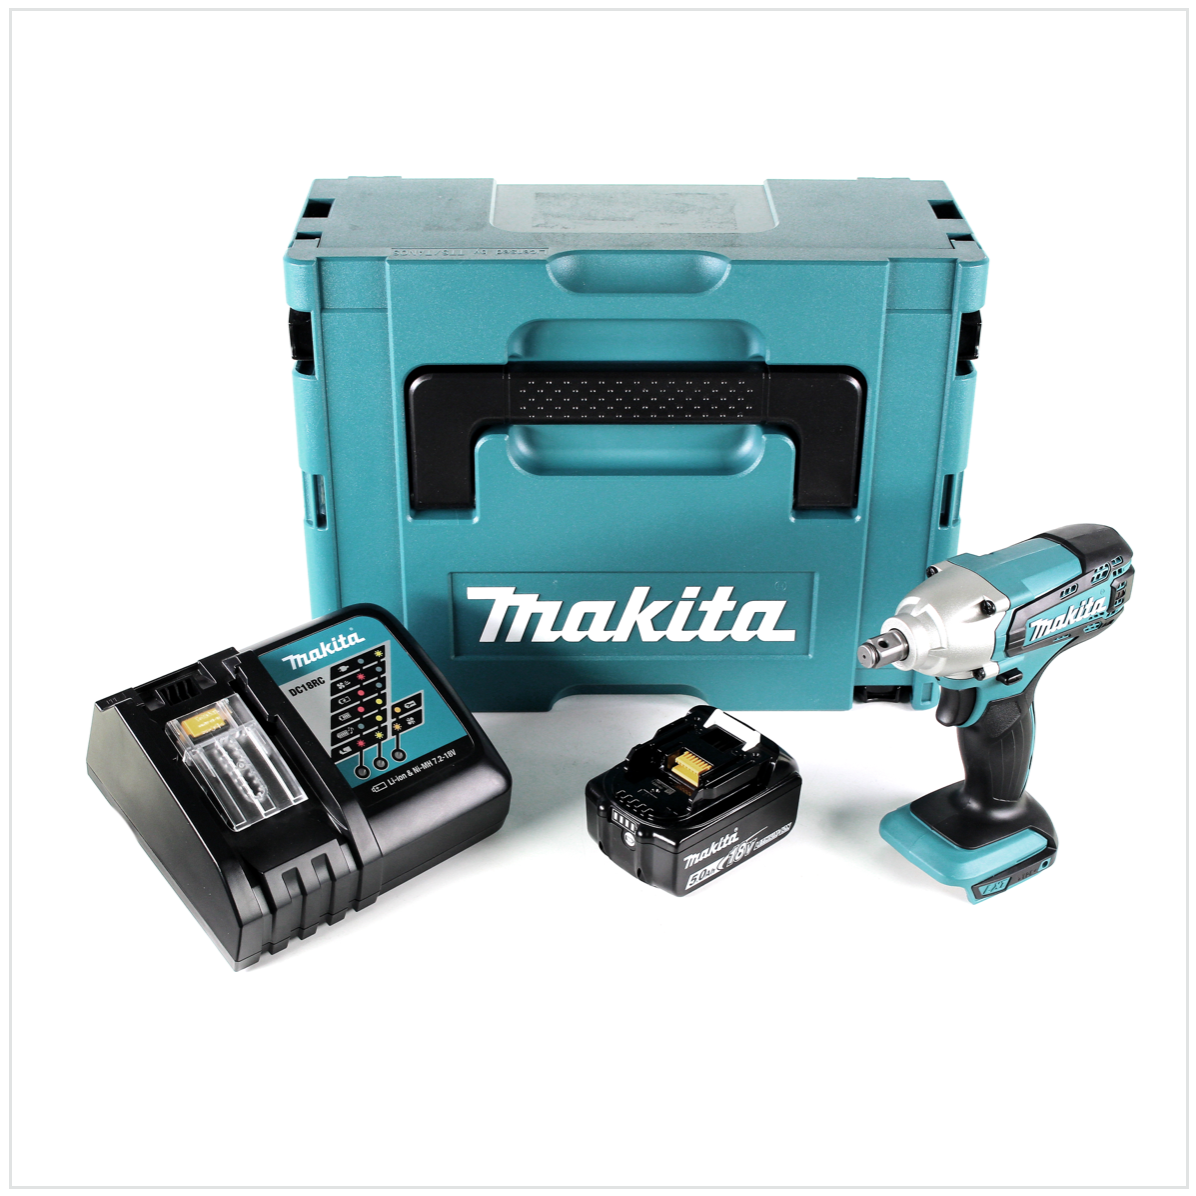 Makita DTW 190 RT1J 18V Li-Ion Boulonneuse à chocs sans fil avec boîtier Makpac + 1x Batterie BL 1850 5,0 Ah + Chargeur rapide DC 18 RC 0